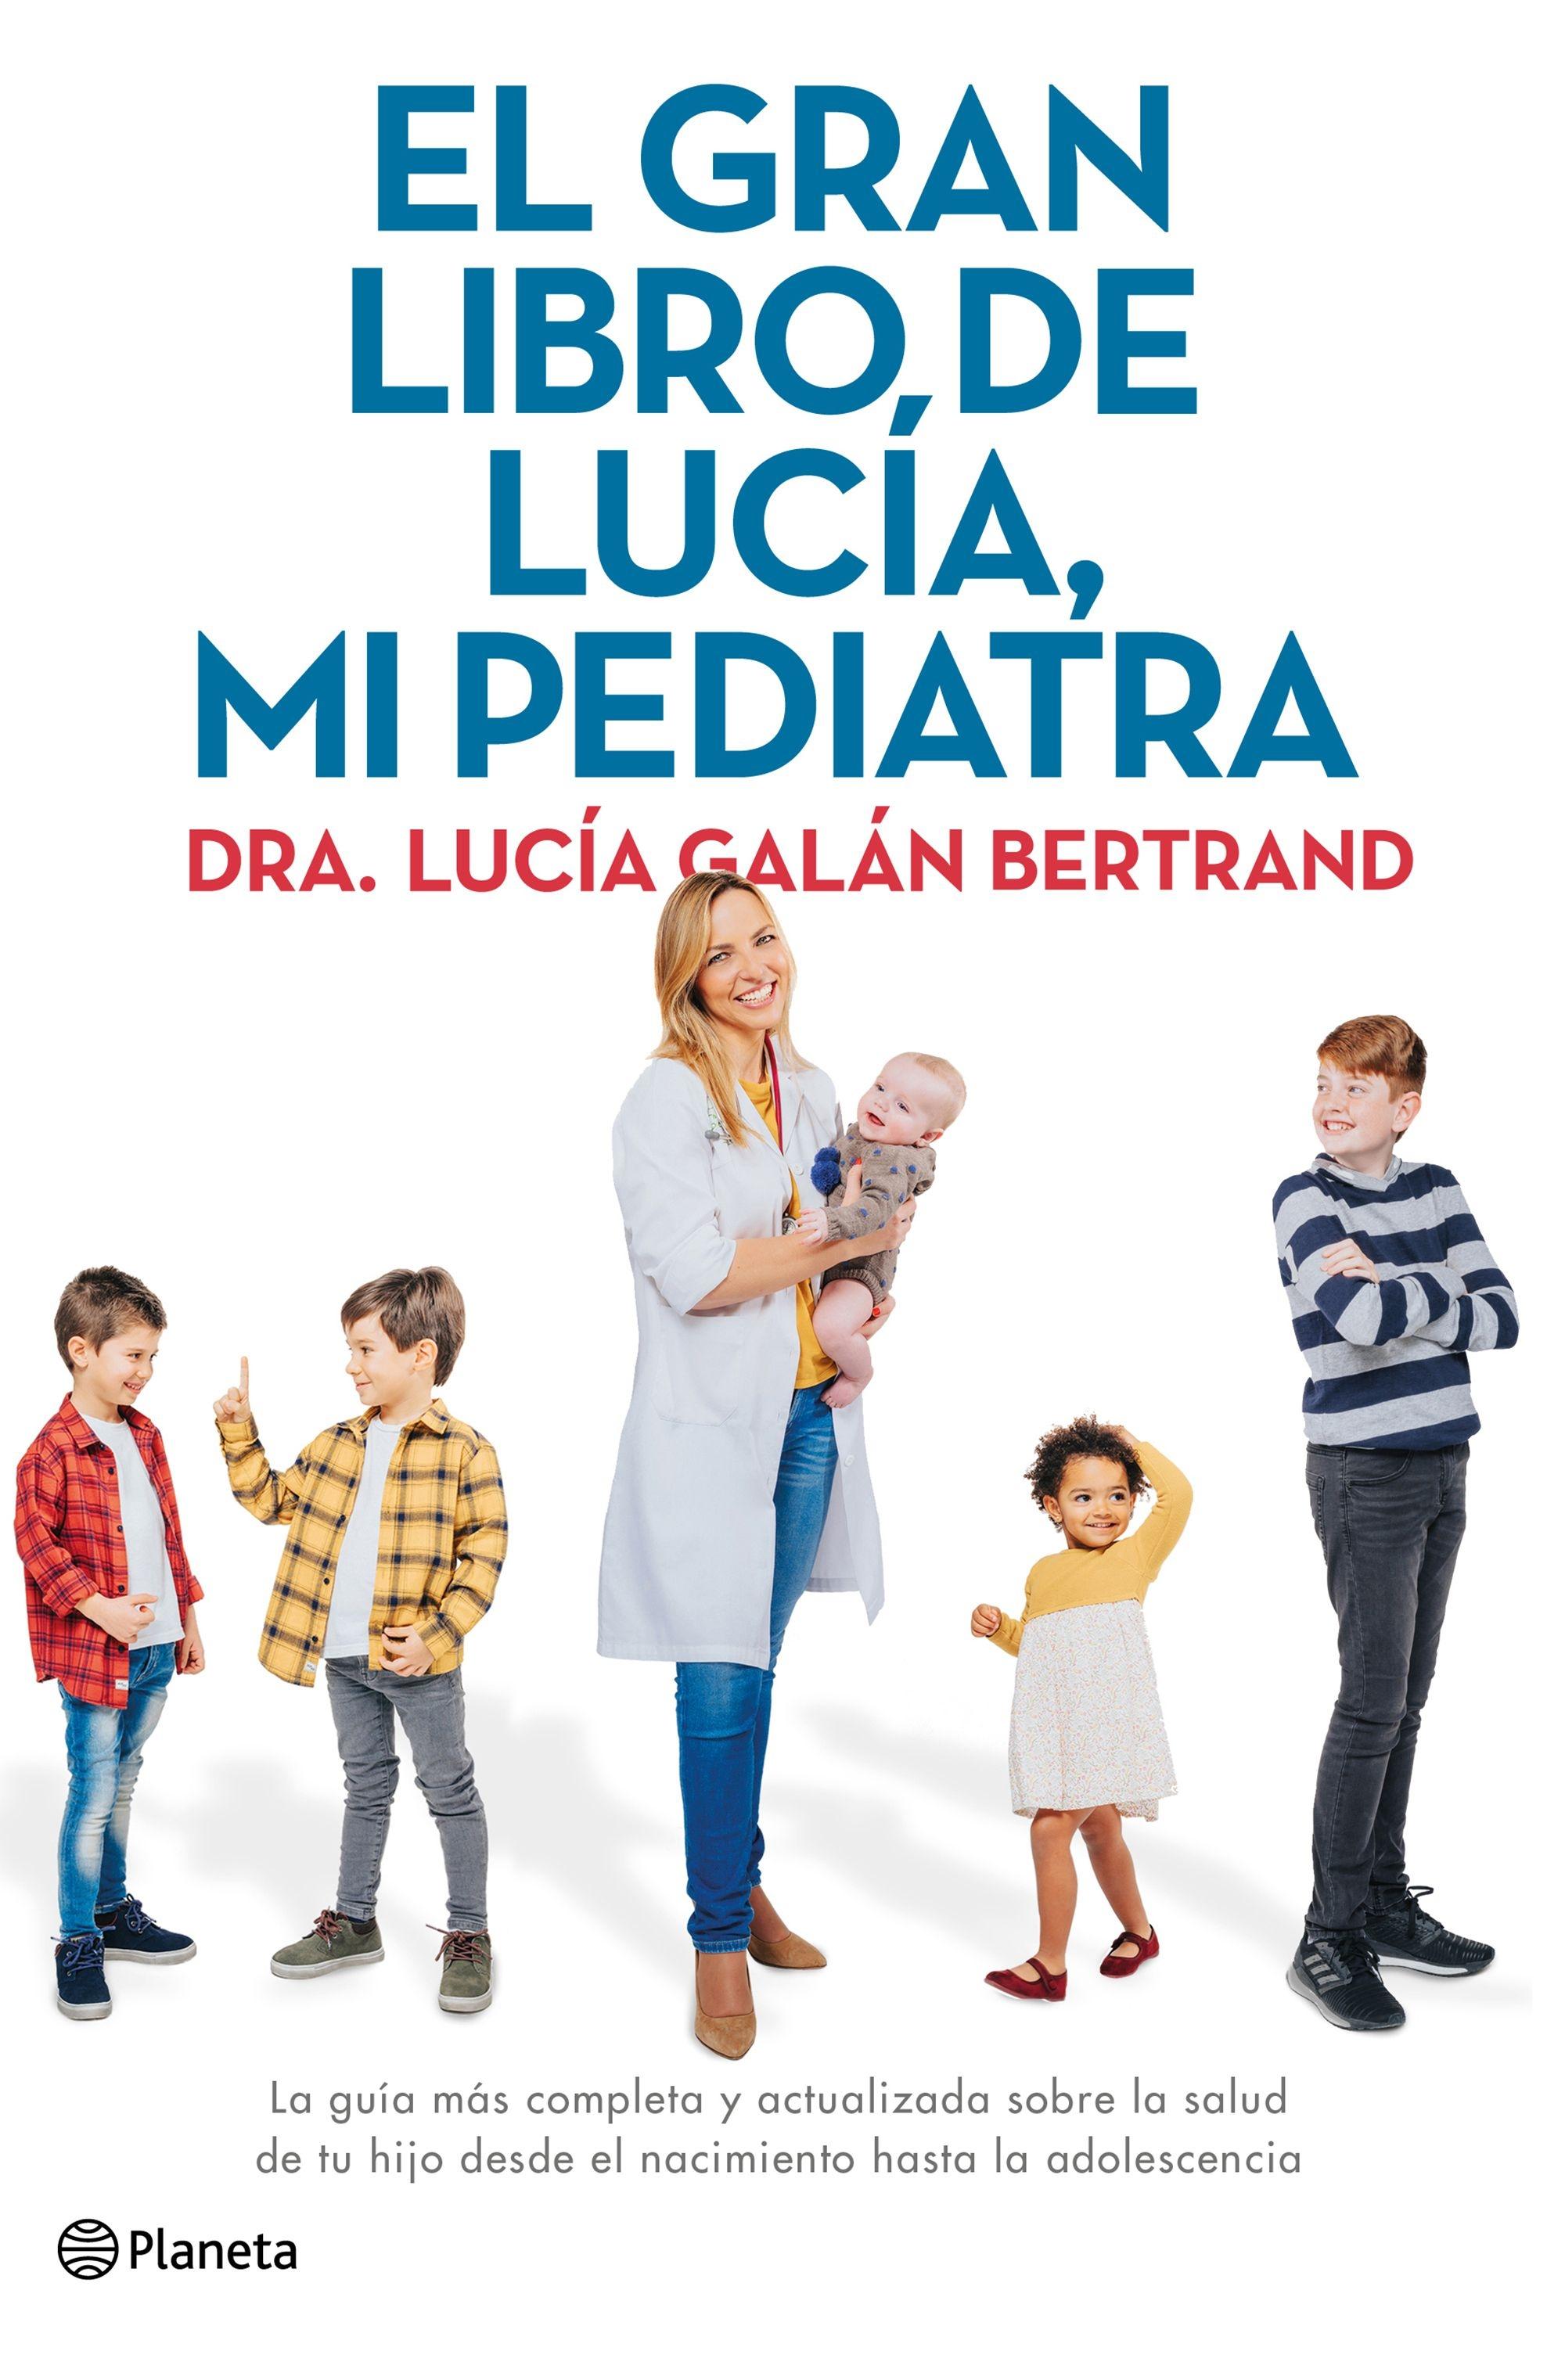 El gran libro de Lucía, mi pediatra. 